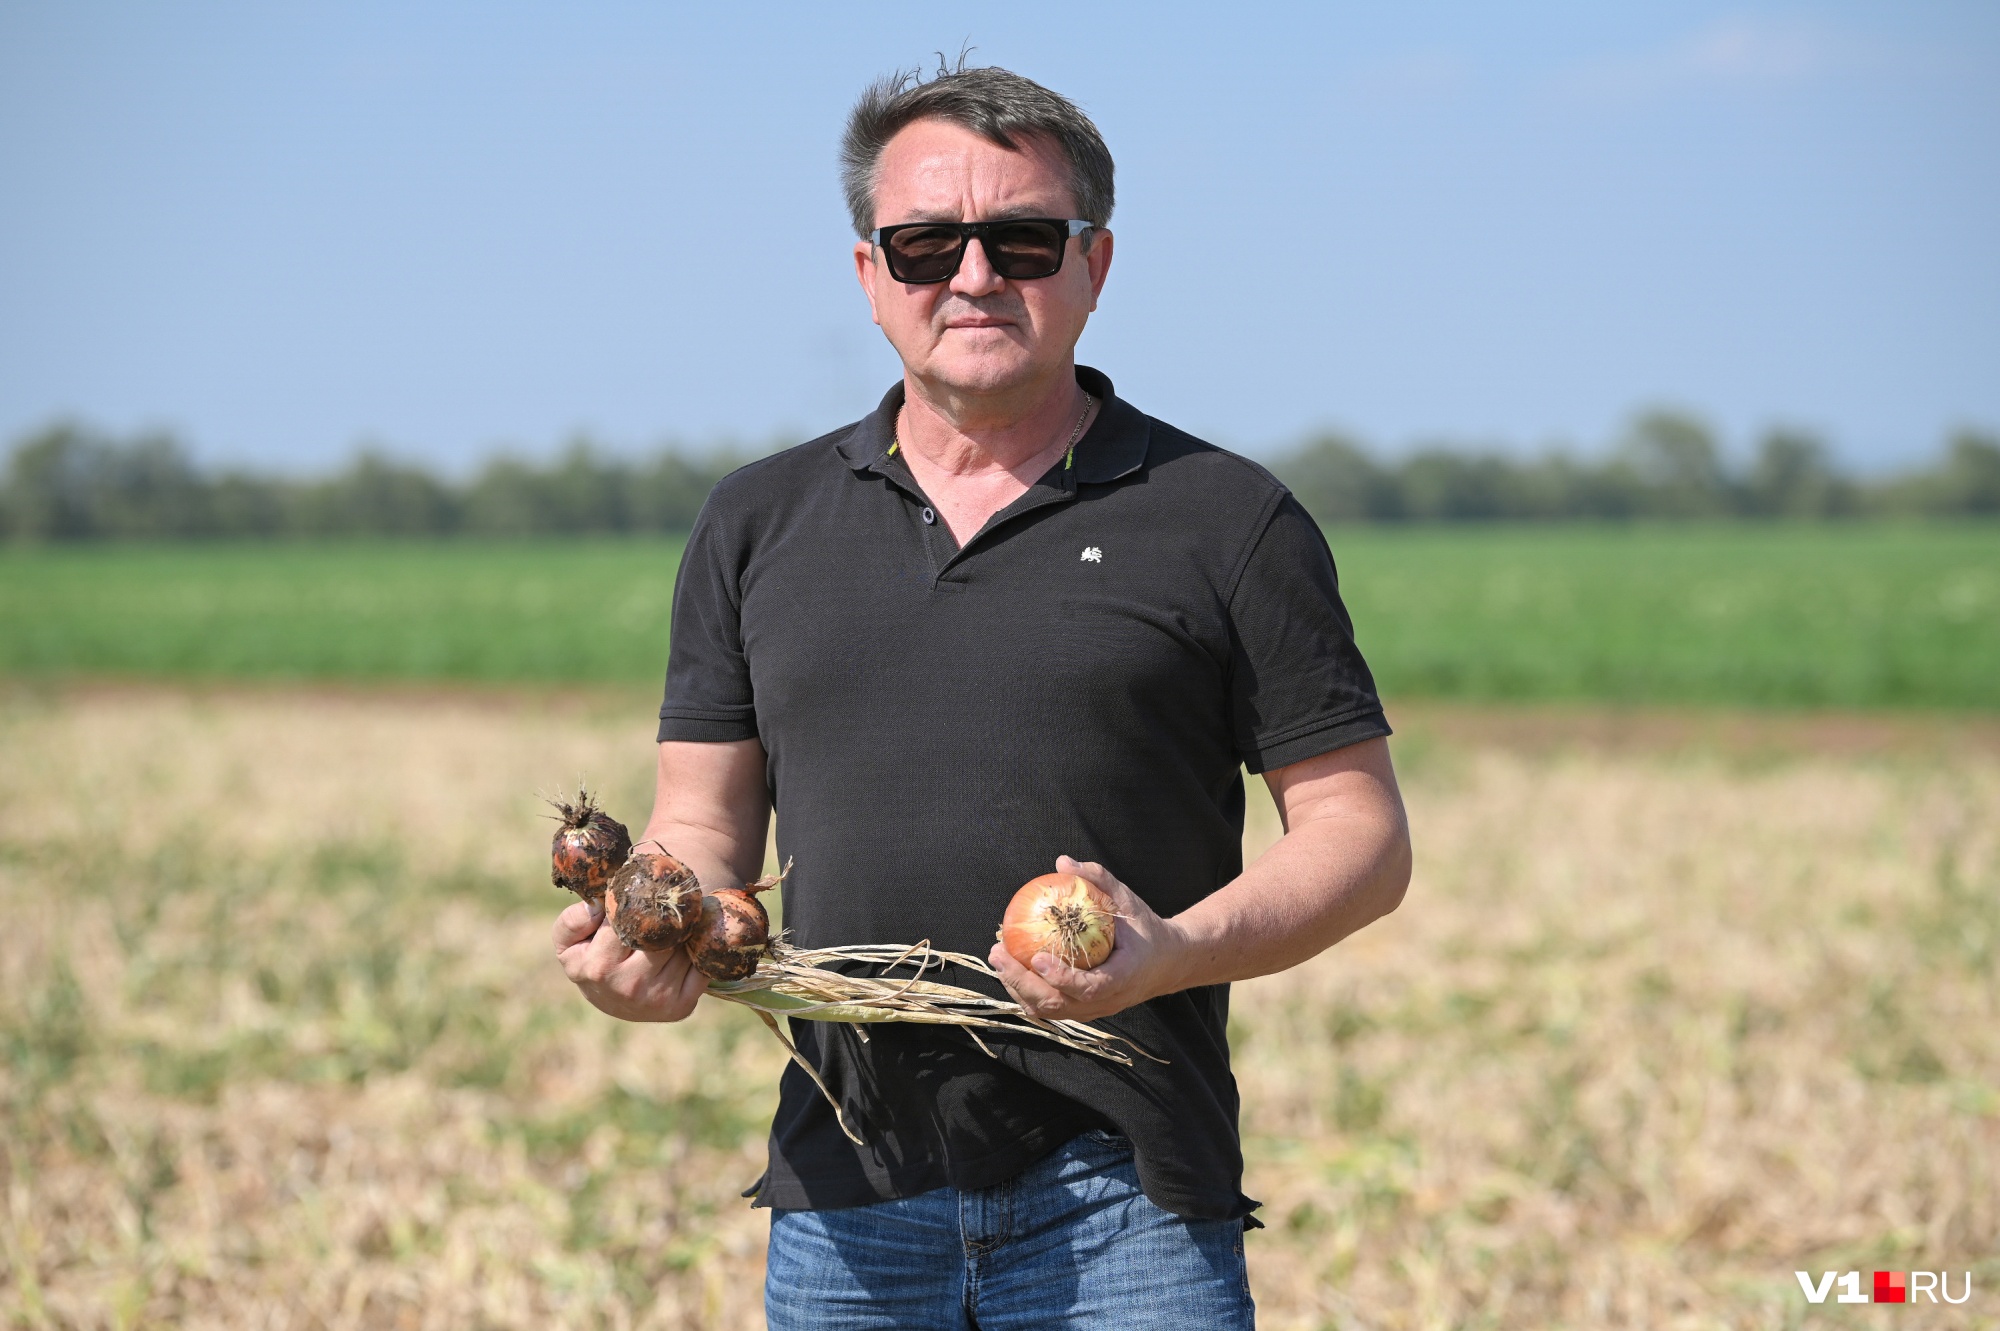 «Хлеб фермера далеко не так сладок, как кажется», — уверен Аркадий Дудов